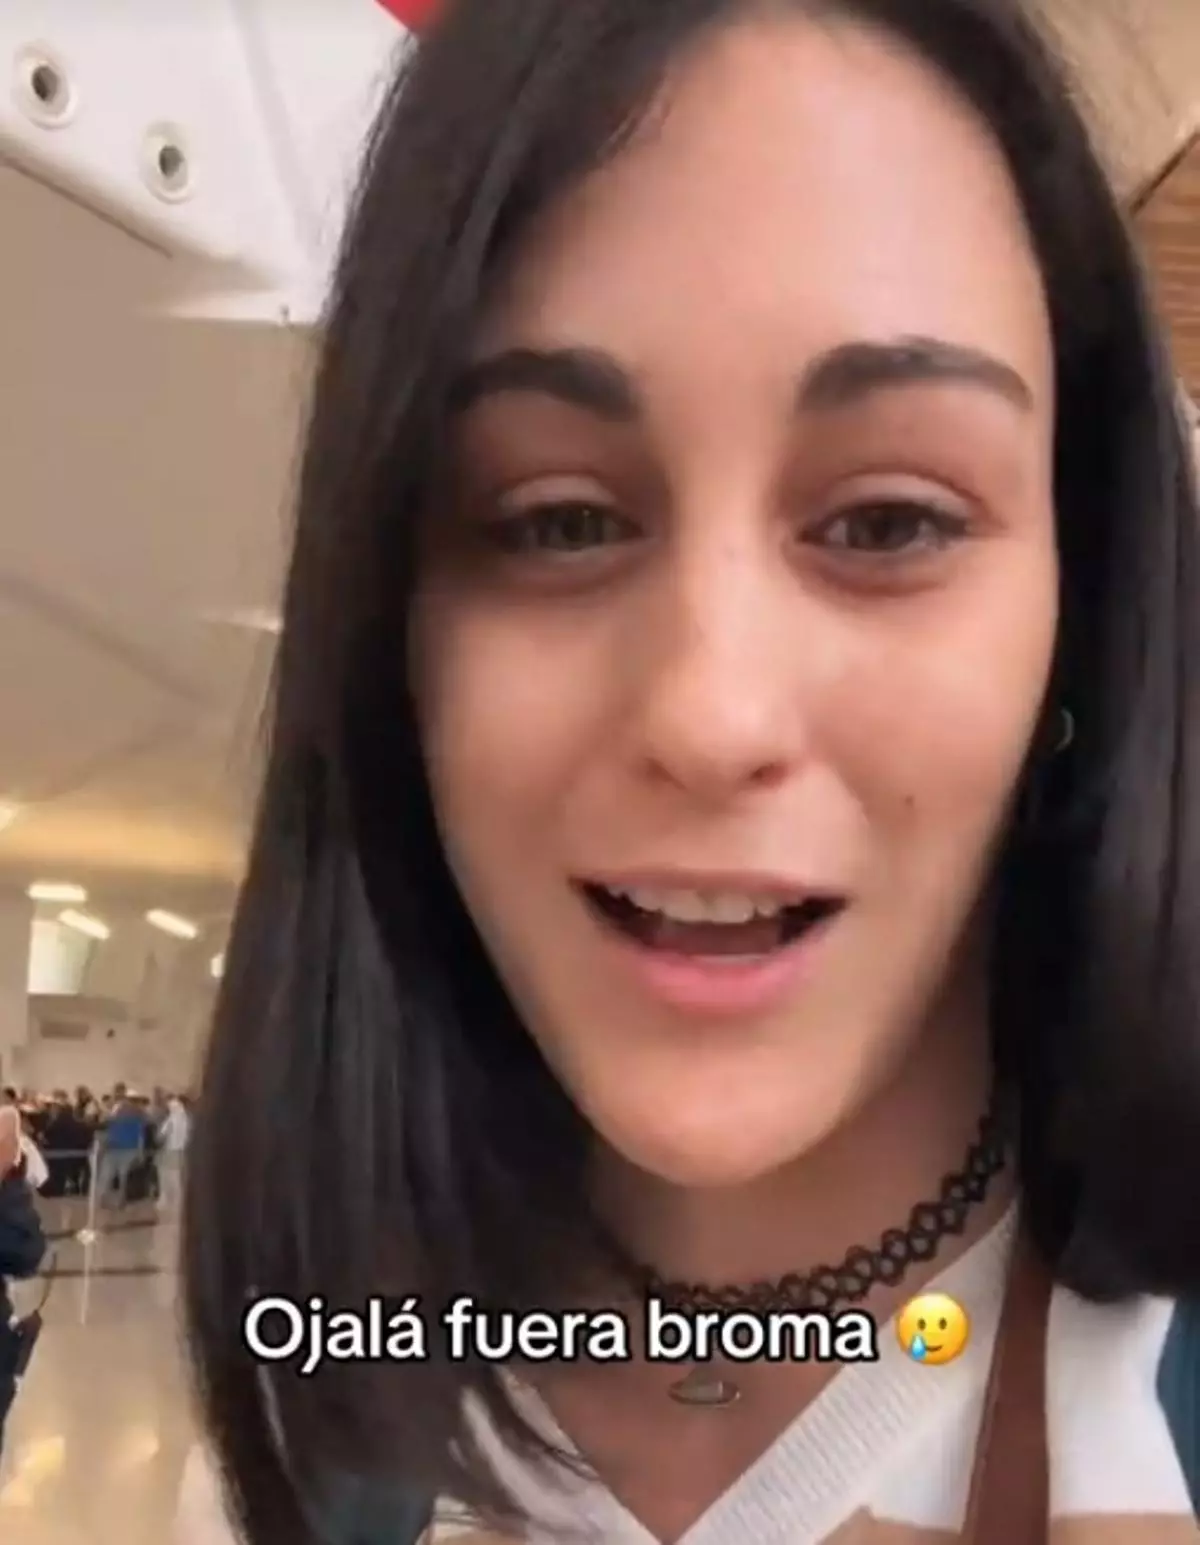 ¿Sabes qué es lo que no puedes hacer en un aeropuerto?: una turista española cuenta que "casi la arrestan" al llegar a Marruecos